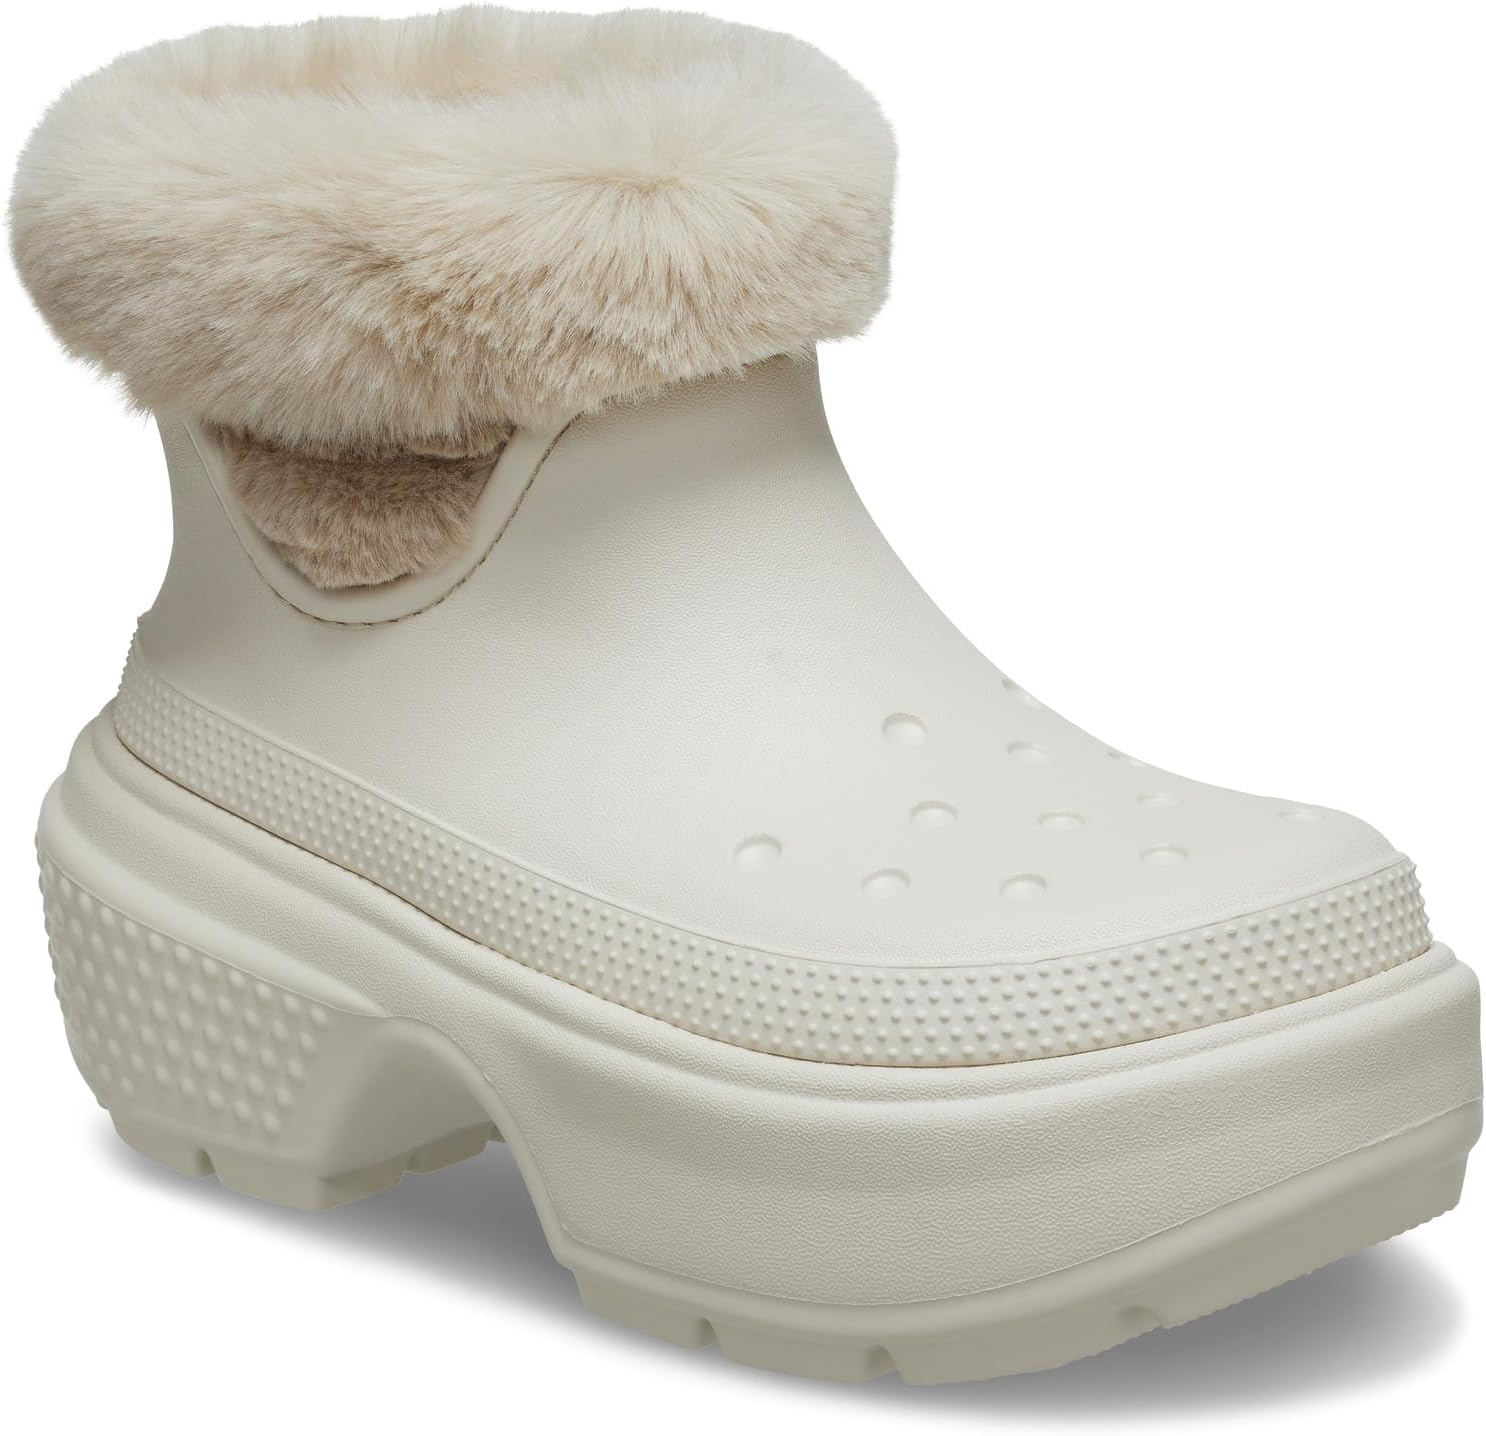 Зимние ботинки Stomp Lined Boot Crocs, цвет Stucco ботинки crocs stomp lined boot цвет stucco